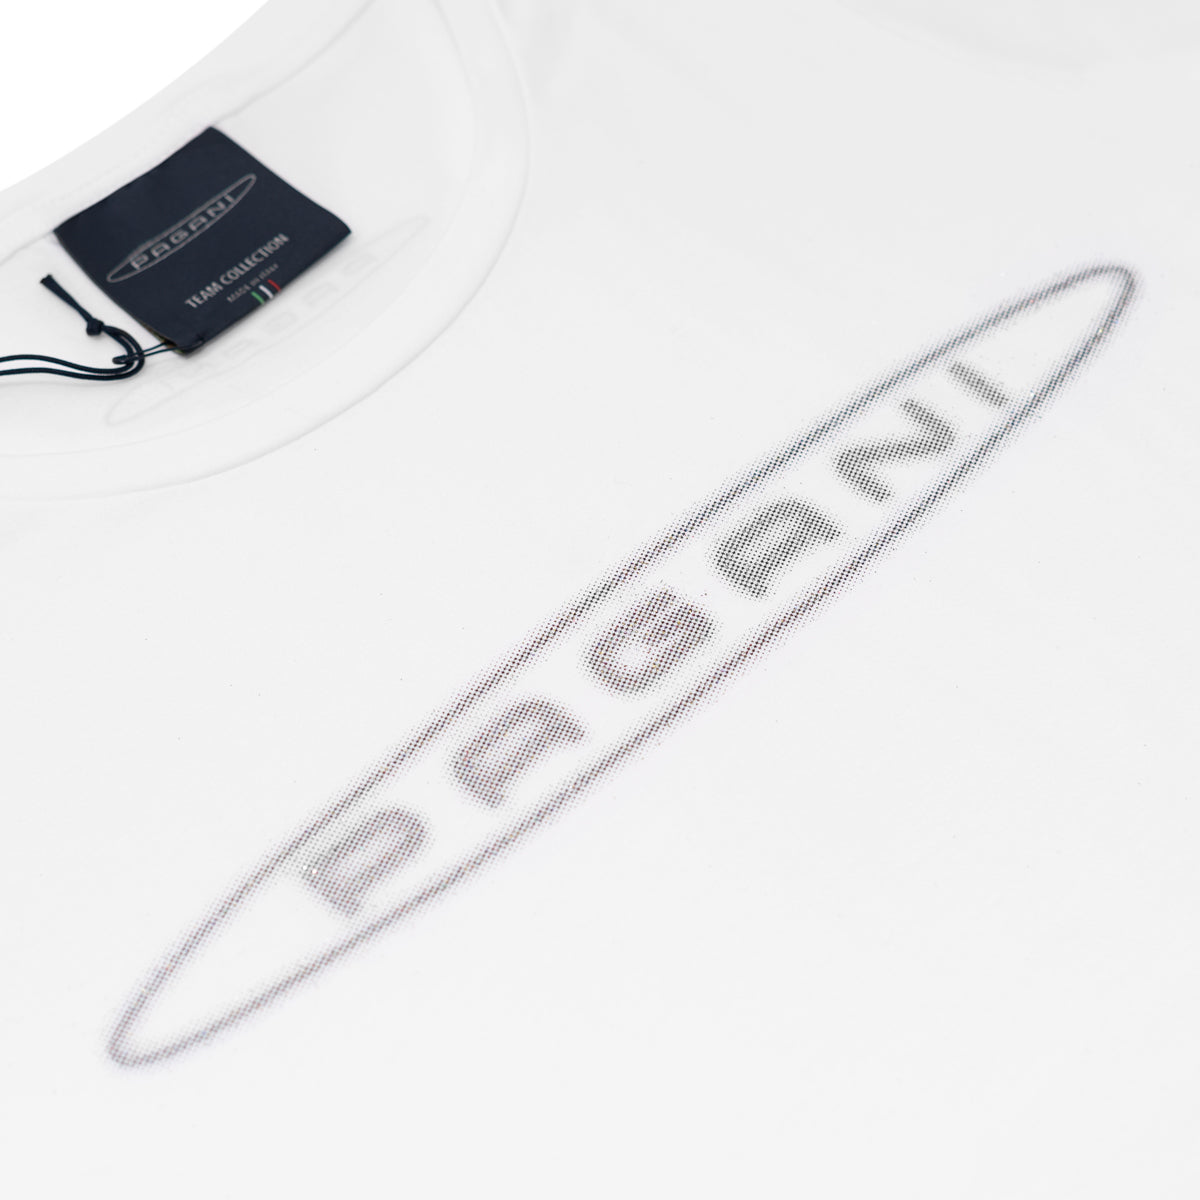 Damen-T-Shirt Mit Glitzer Weiß | Team Collection